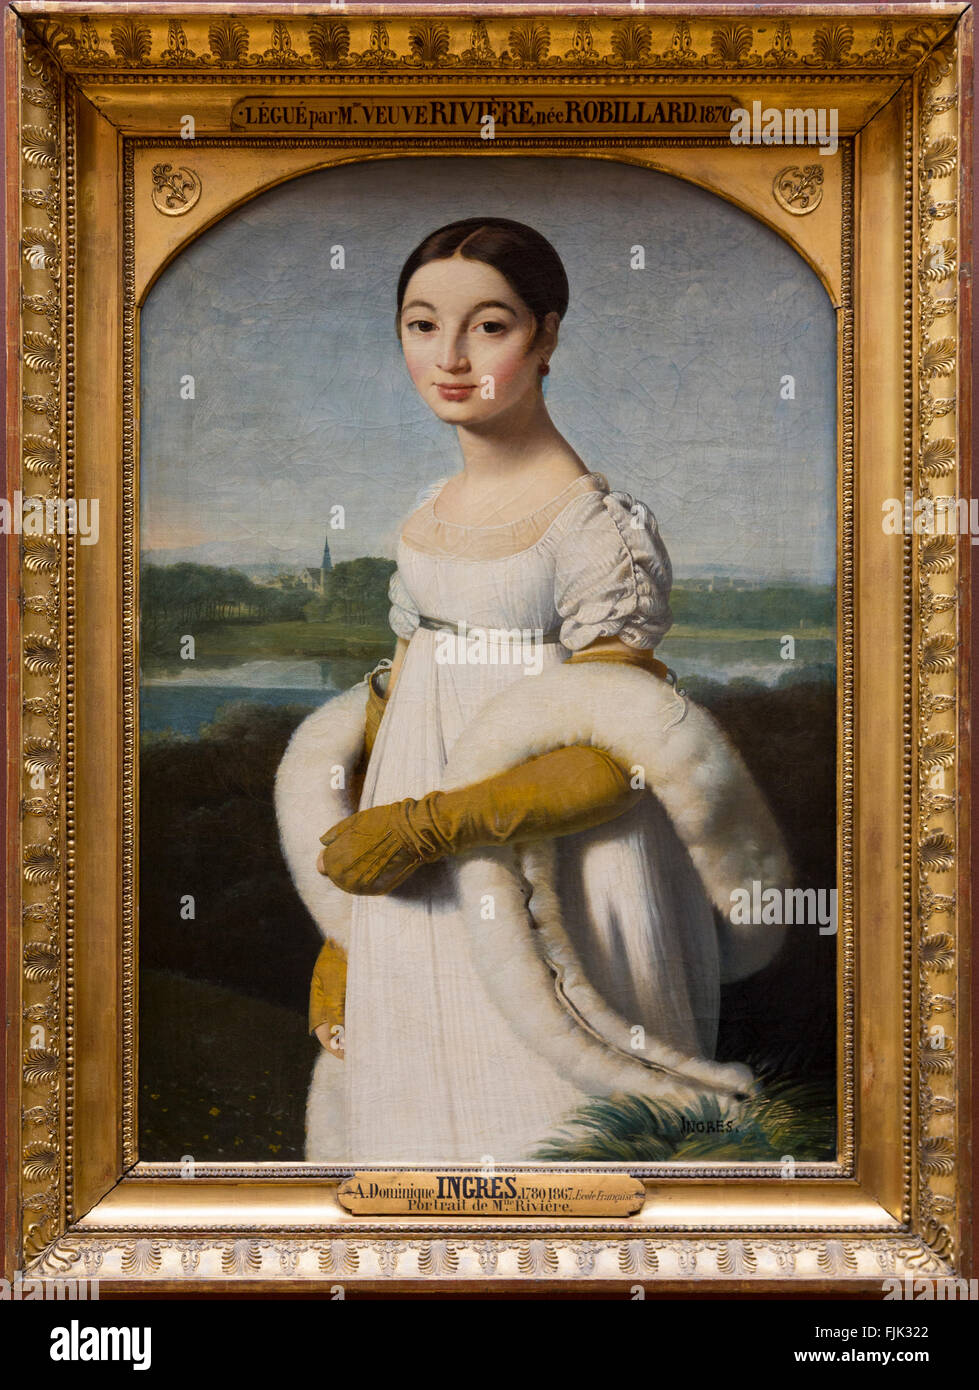 Peinture à l'huile 'Portrait de Mademoiselle Rivière' par Dominique Ingres affiche dans un cadre doré, le Musée du Louvre, Paris, France Banque D'Images